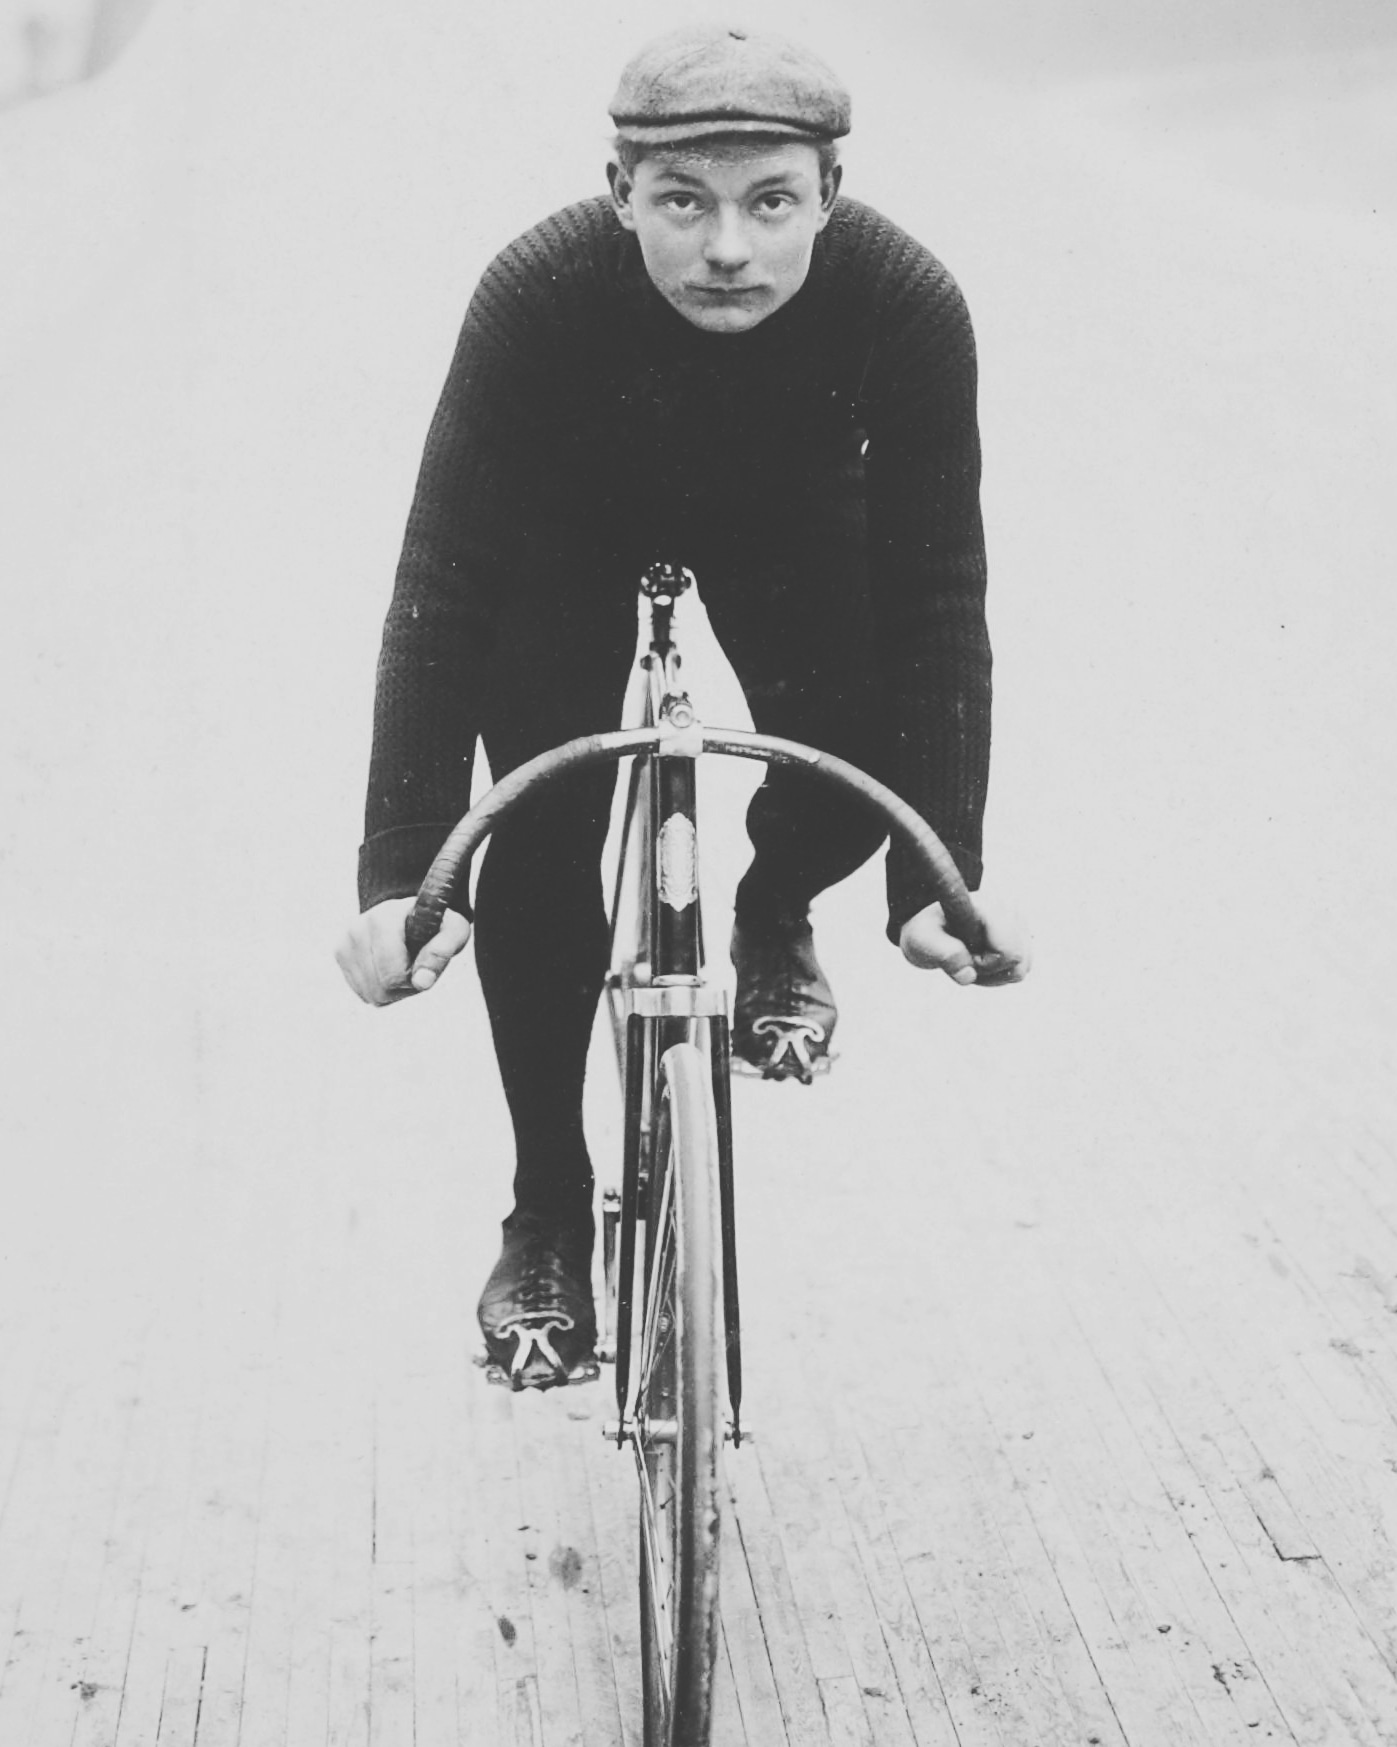 Henri Cornet, the youngest Tour de France winner ever